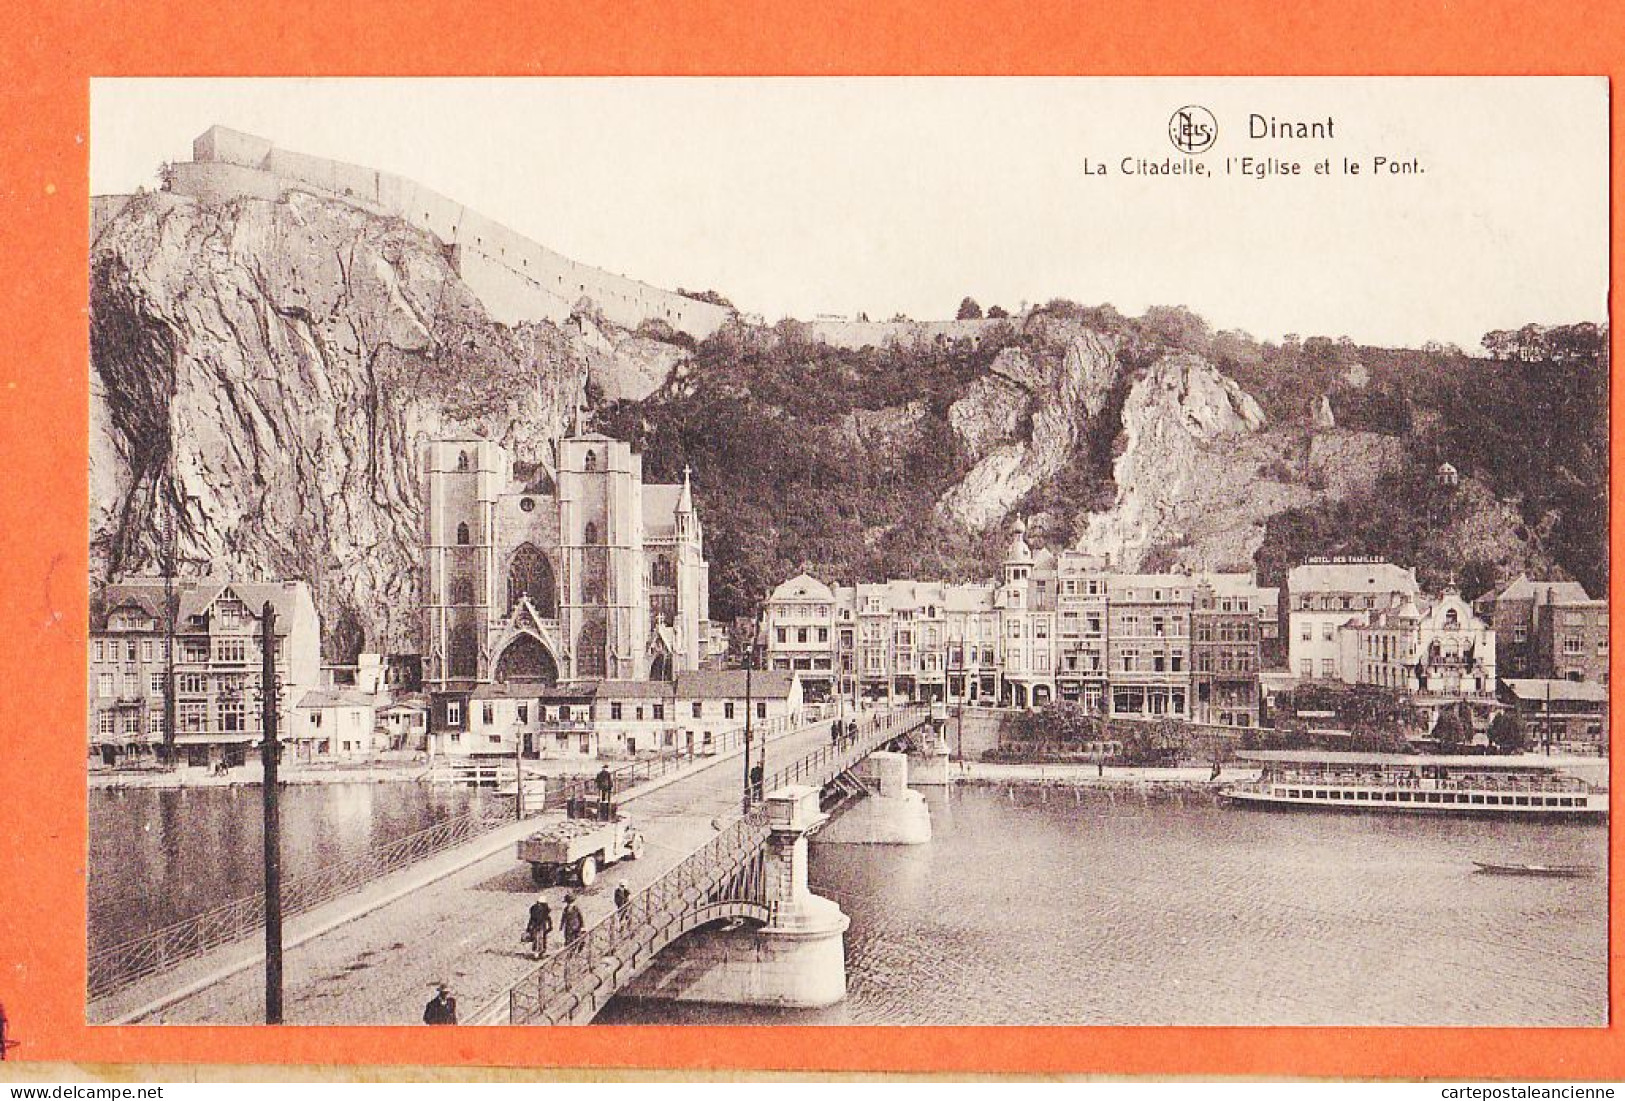 09506 /⭐ ◉  DINANT Namur Citadelle L'Eglise Et Le Pont (2) 1910s ● Ern THILL Bruxelles NELS  - Dinant